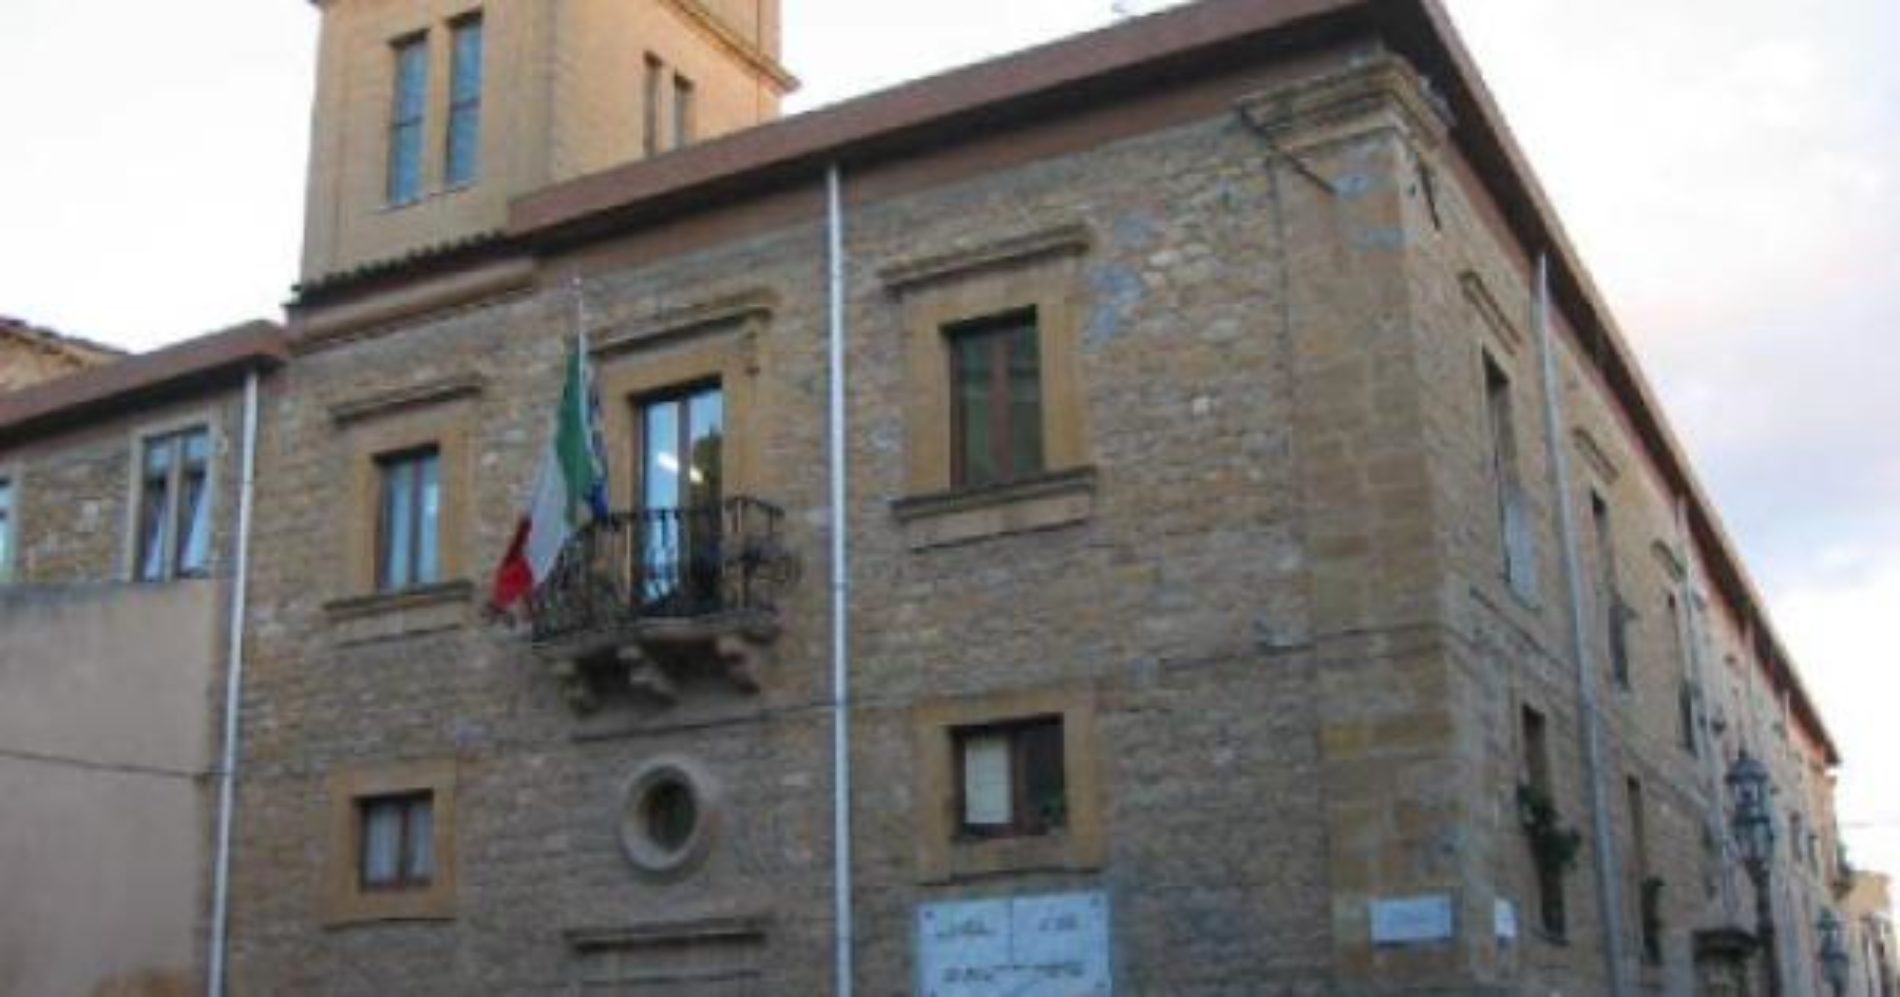 PIETRAPERZIA. Il sindaco Salvuccio Messina, in consiglio comunale, ha perduto la maggioranza.